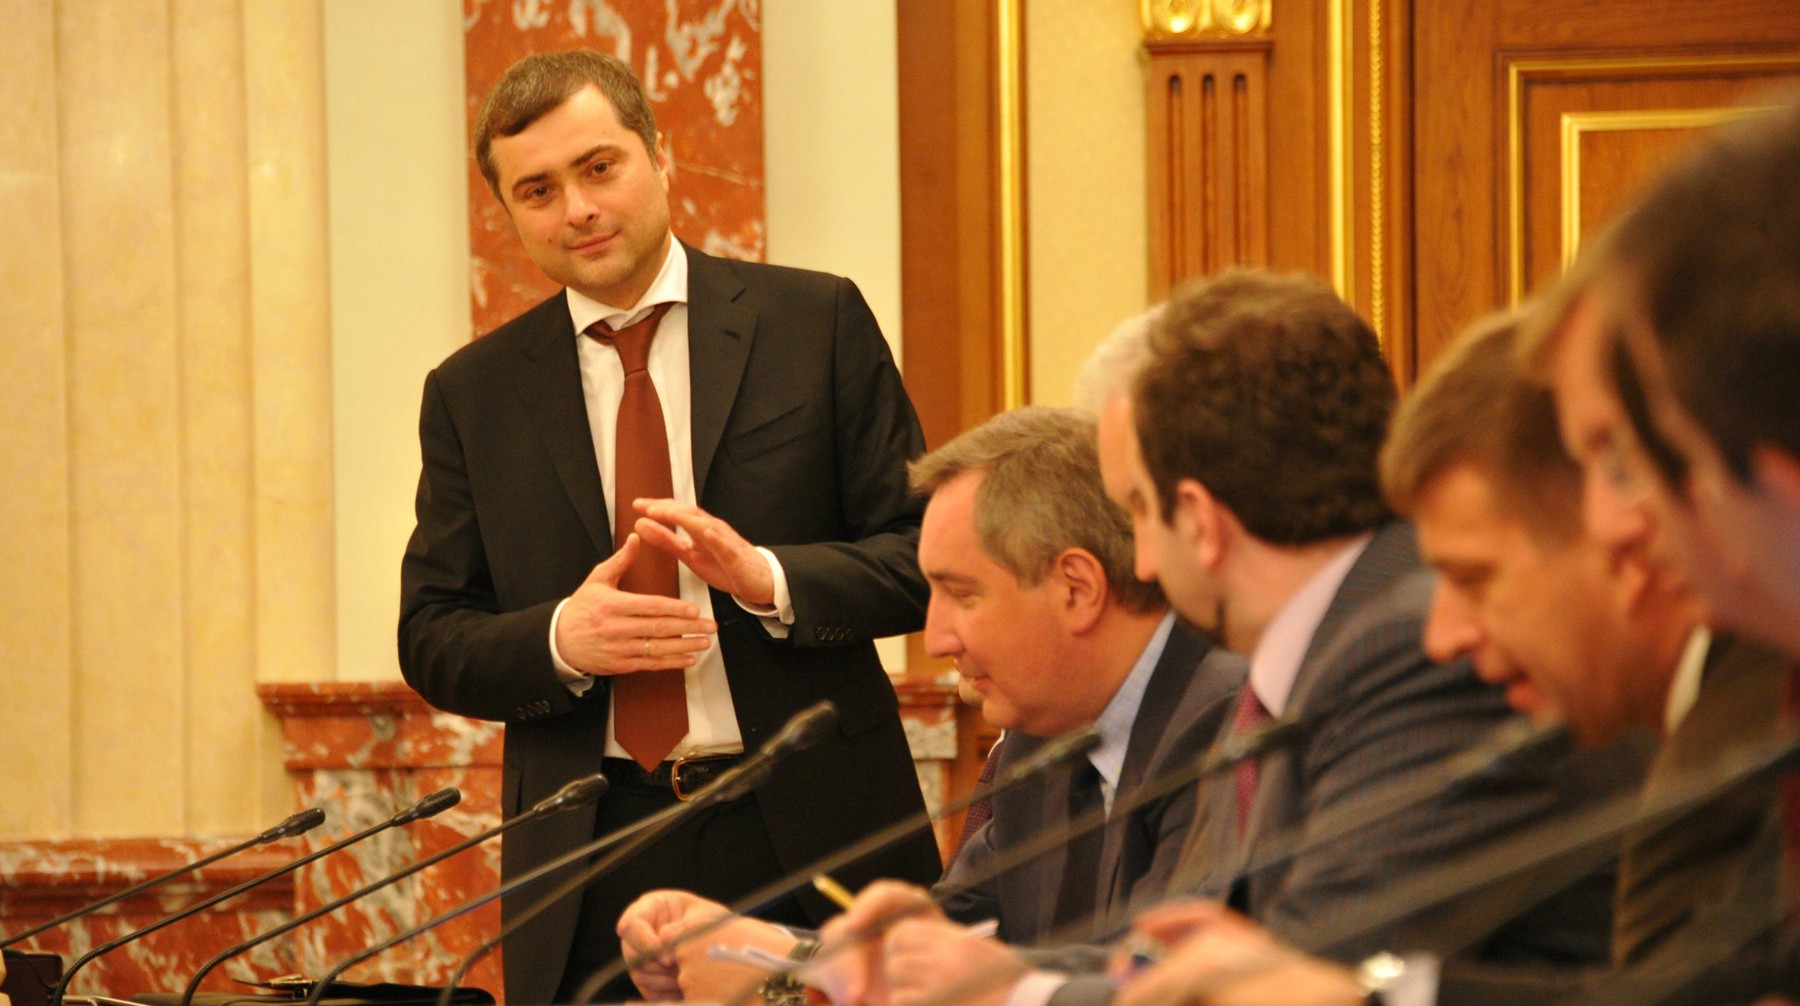 Dailystorm - Сурков рассказал о политических планах после увольнения из Кремля